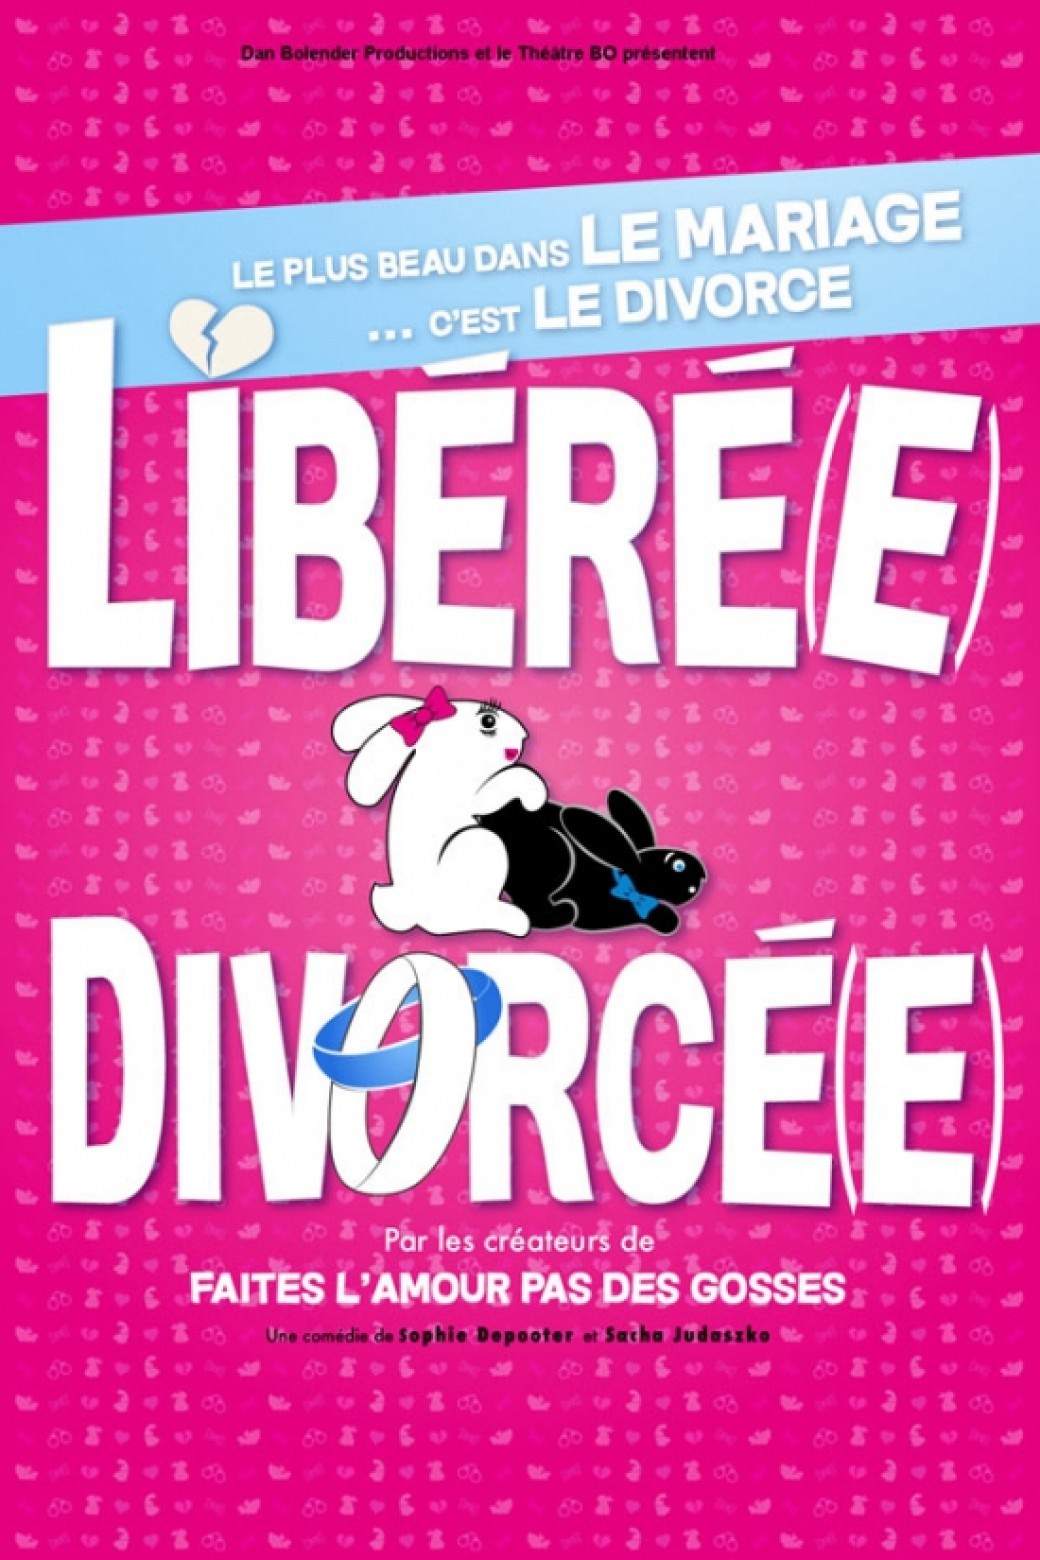 Libérée divorcée